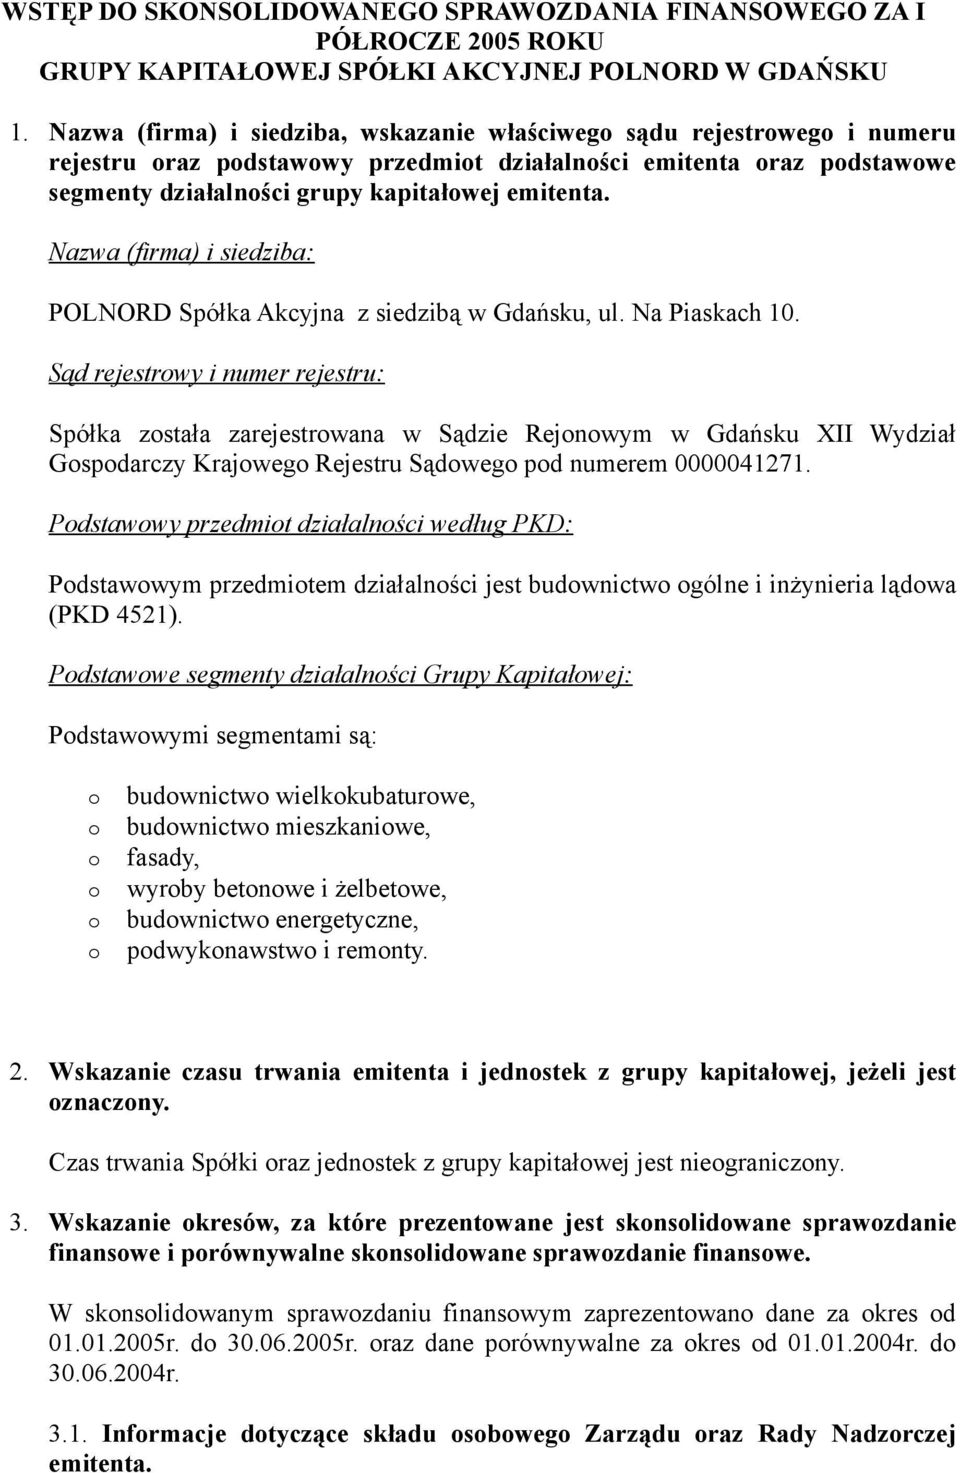 Nazwa (firma) i siedziba: POLNORD Spółka Akcyjna z siedzibą w Gdańsku, ul. Na Piaskach 10.